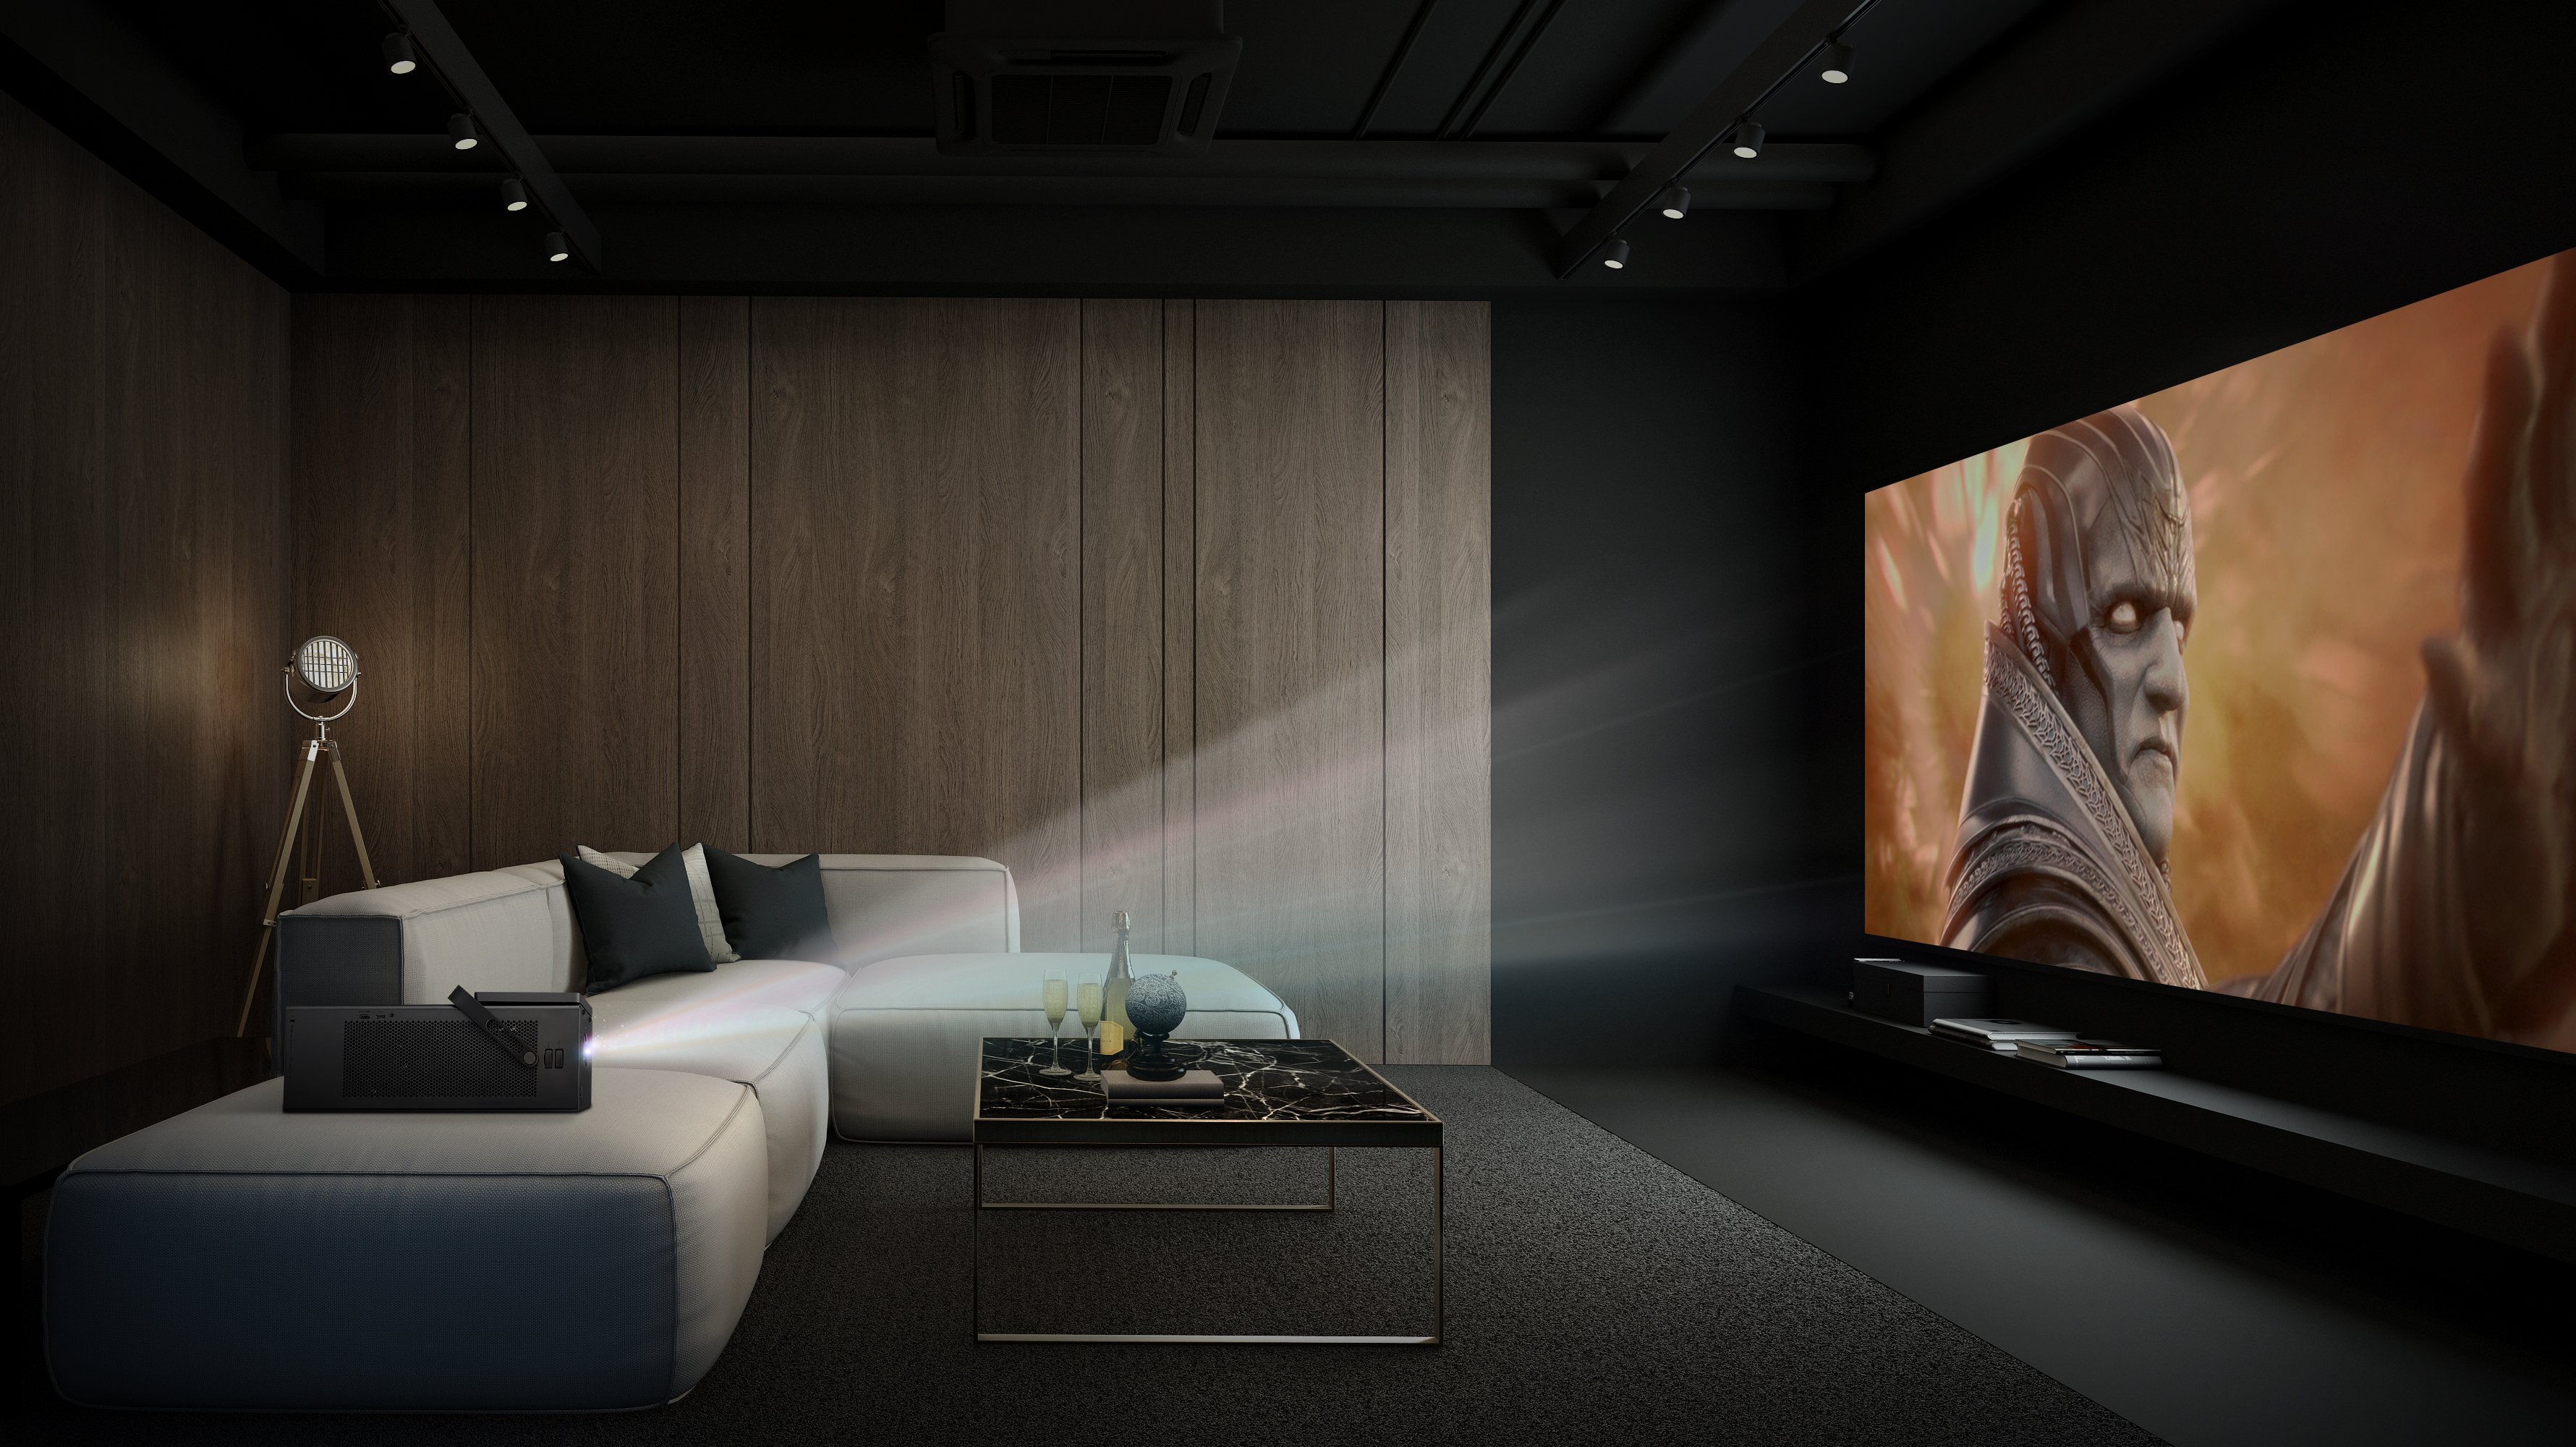 Домашний кинотеатр android. Проектор barco, Home Cinema 3020.